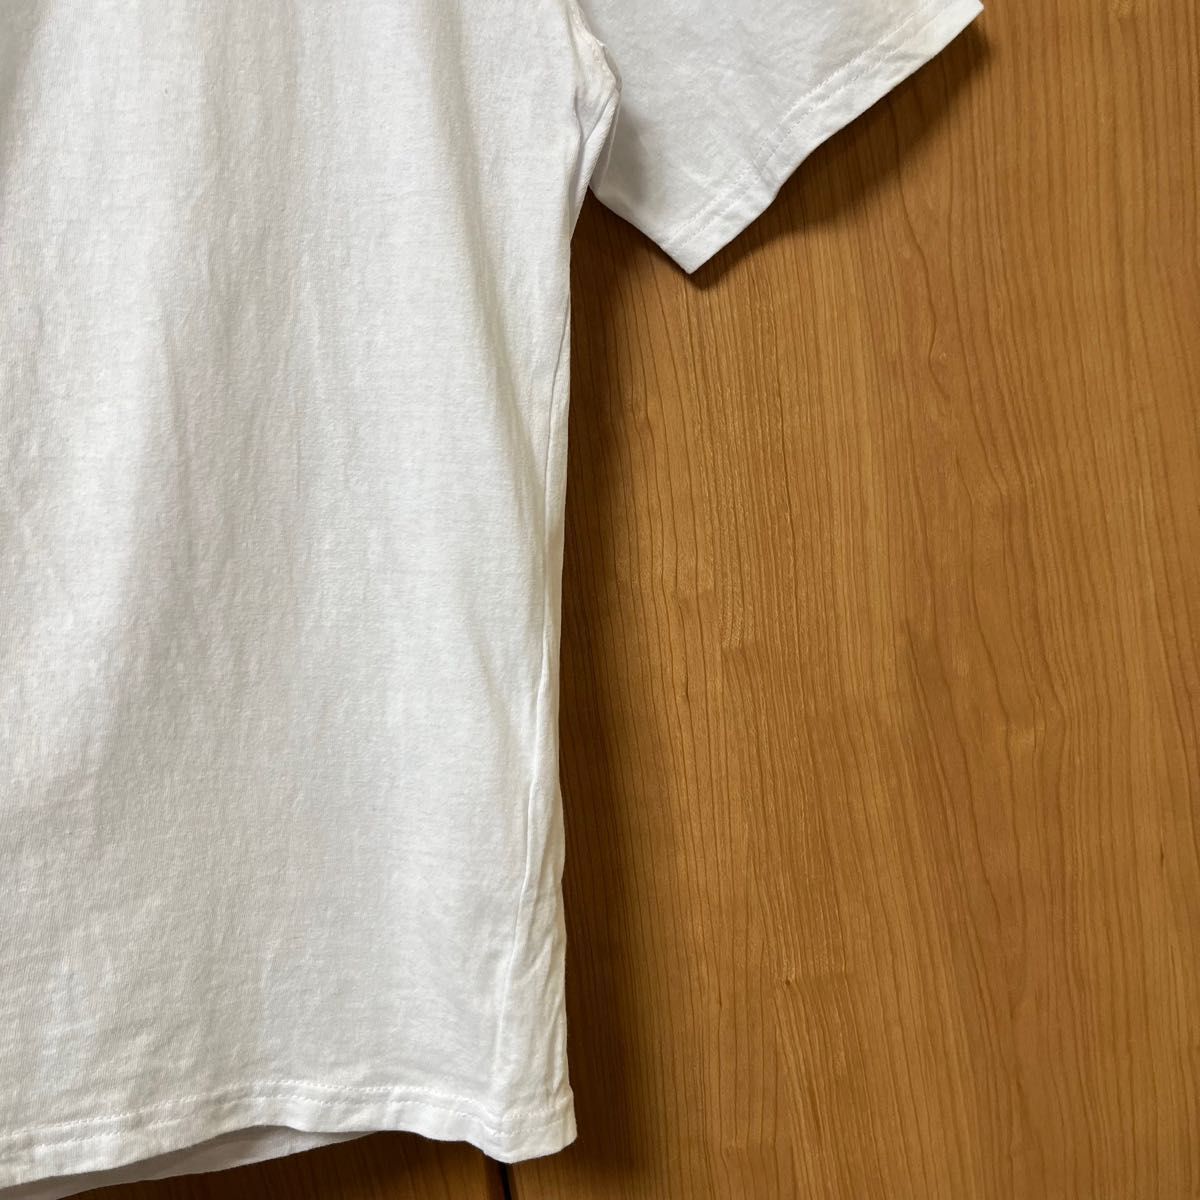 CONVERSE(コンバース) ハイカットシューズ刺繍 クルーネックTシャツ トップス 半袖 ルーズフィット ユニセックス